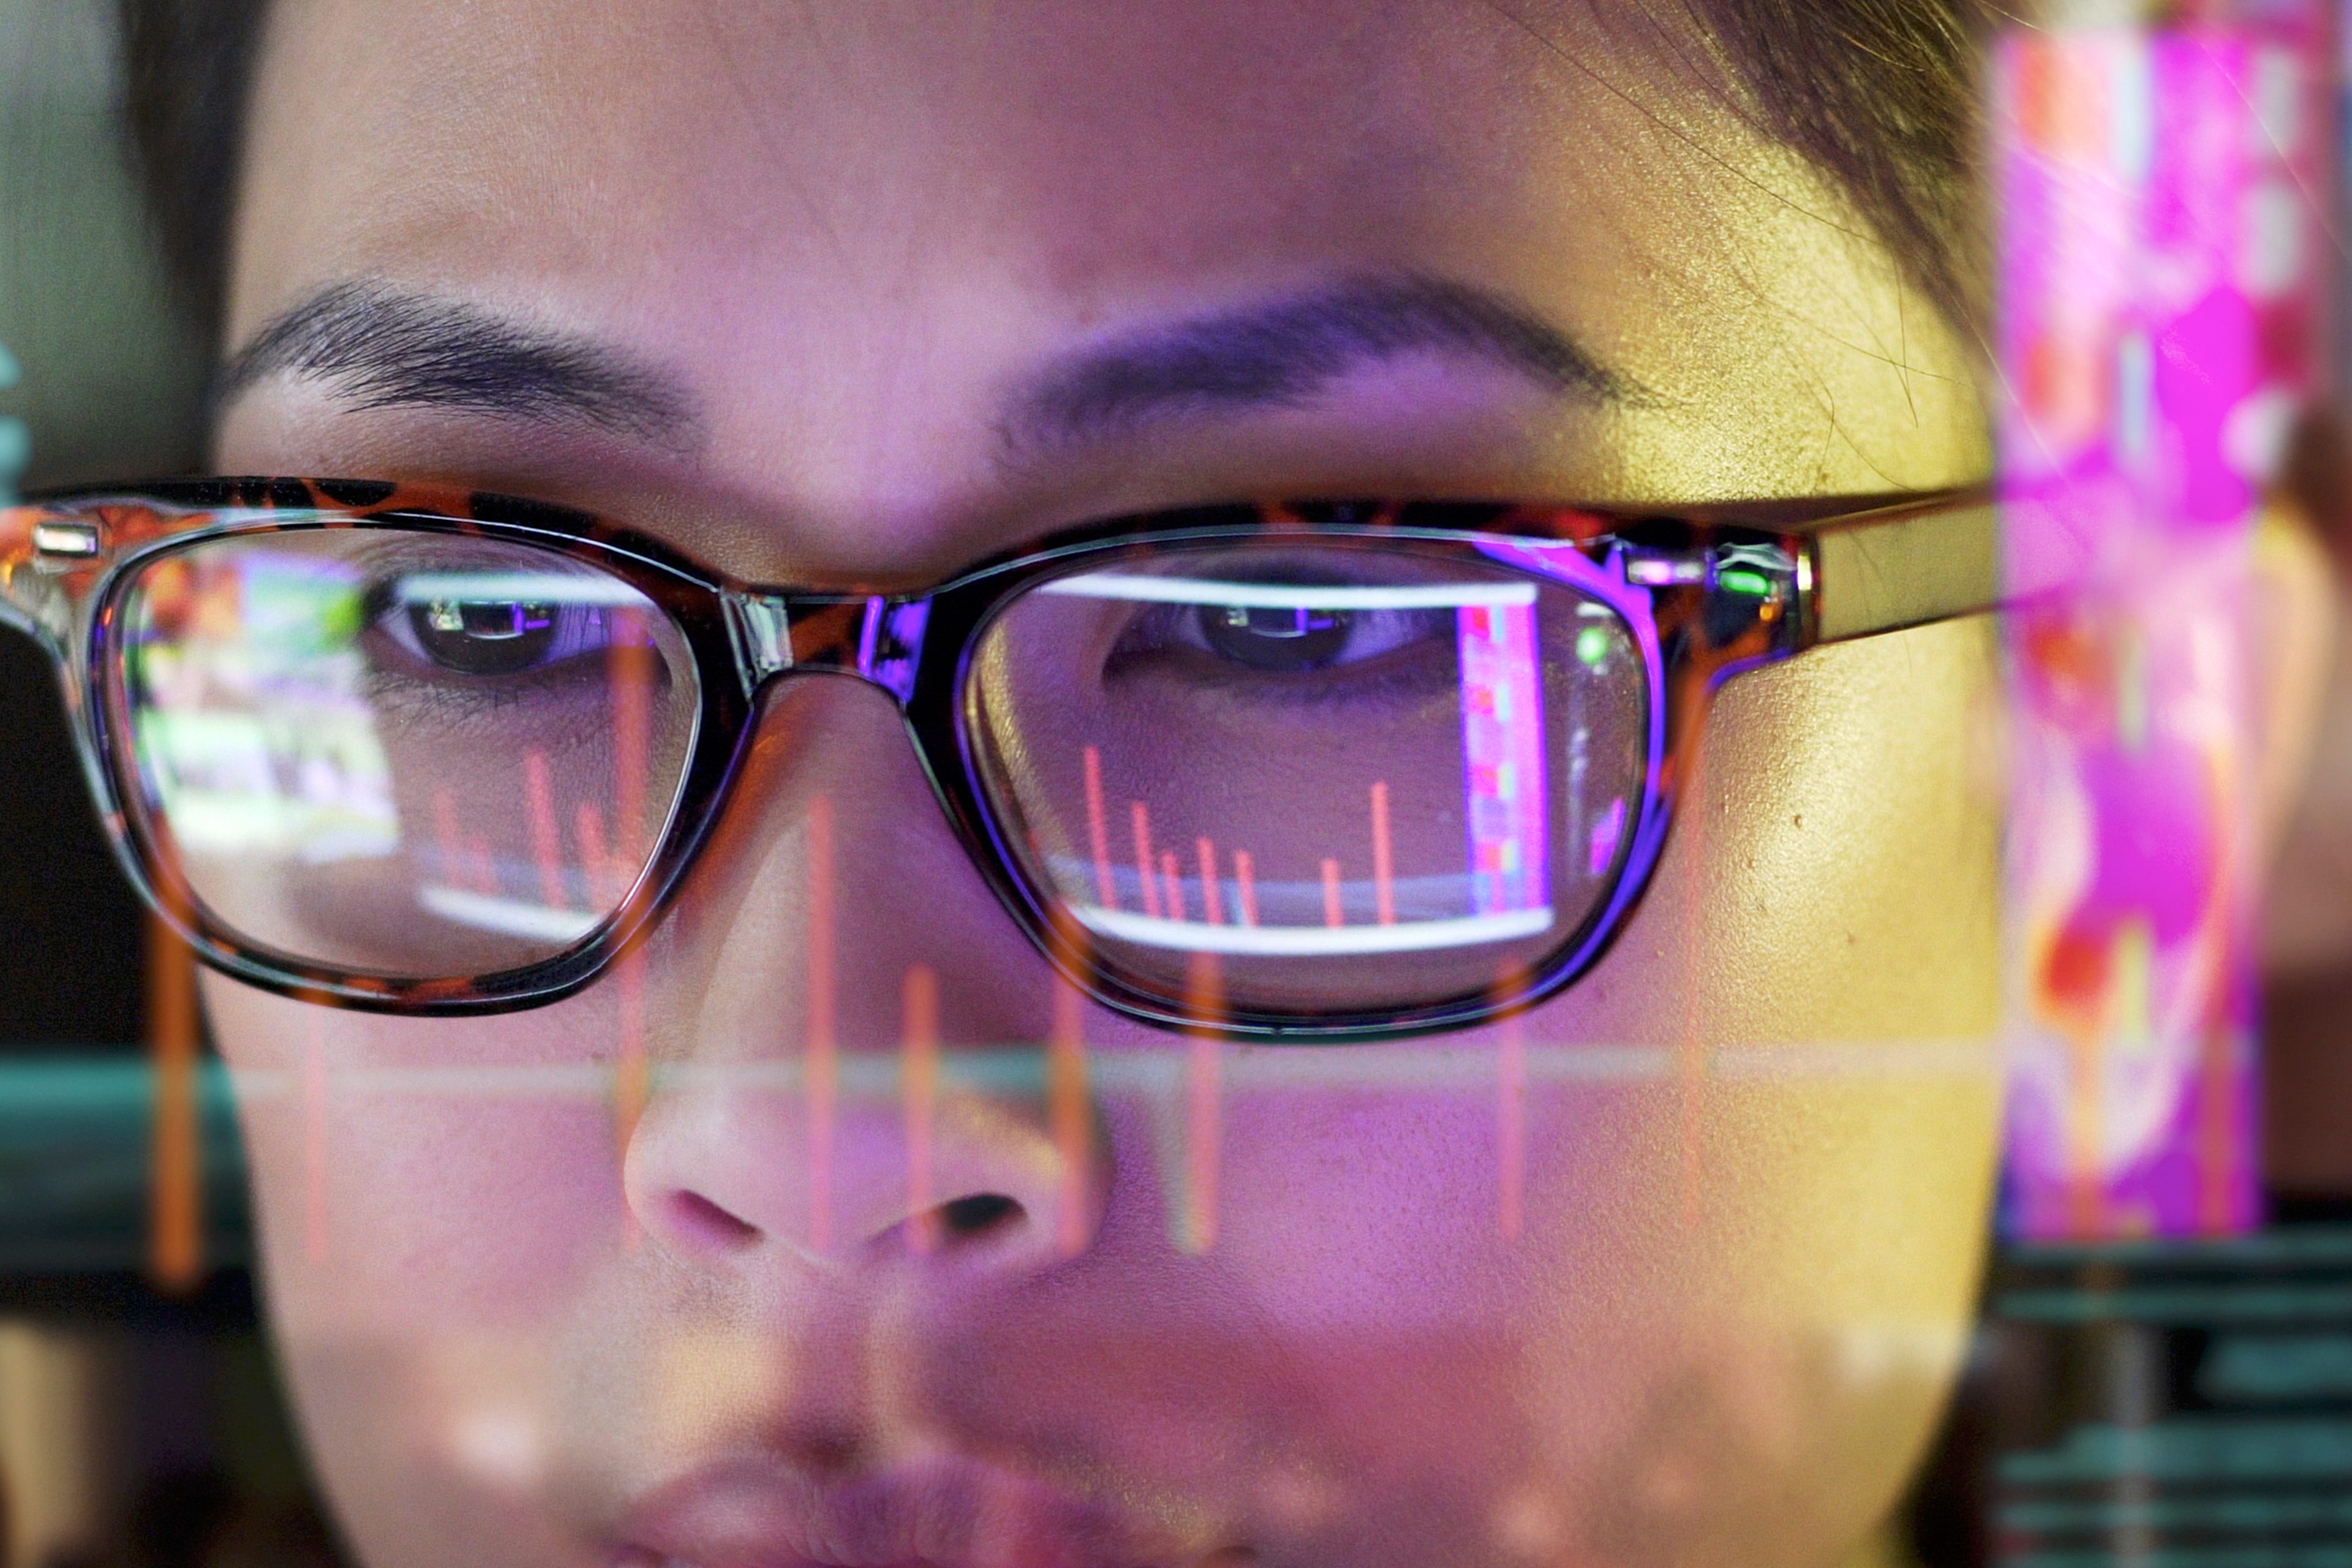 Lys fra datamaskin gjenspeiles i en kvinnes briller